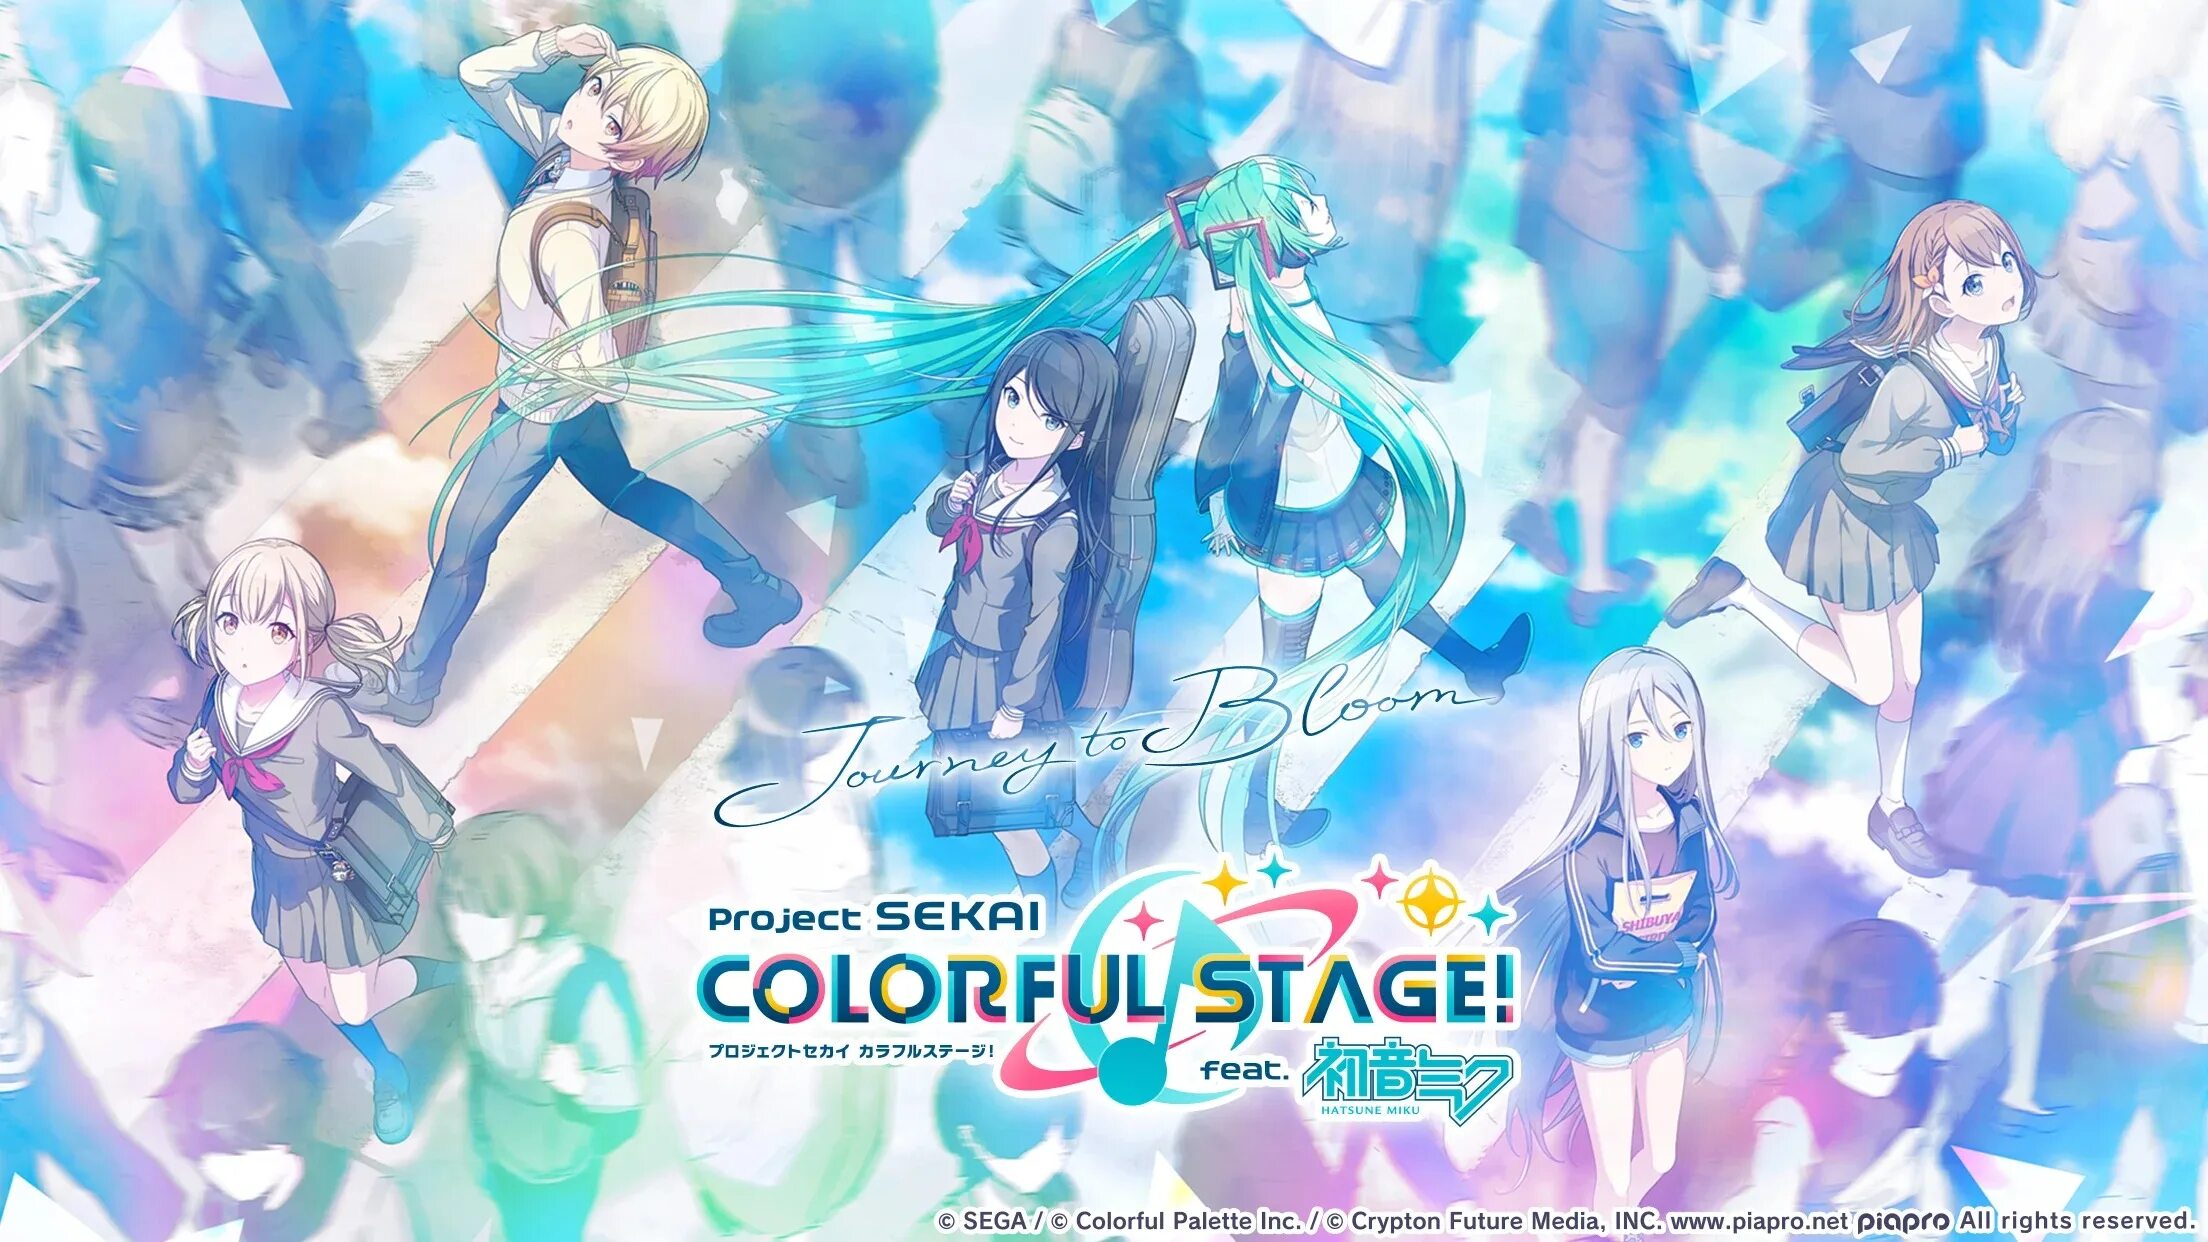 Project Sekai. Colorful Stage. Секай Колорфул Стейдж. Постеры Sekai.